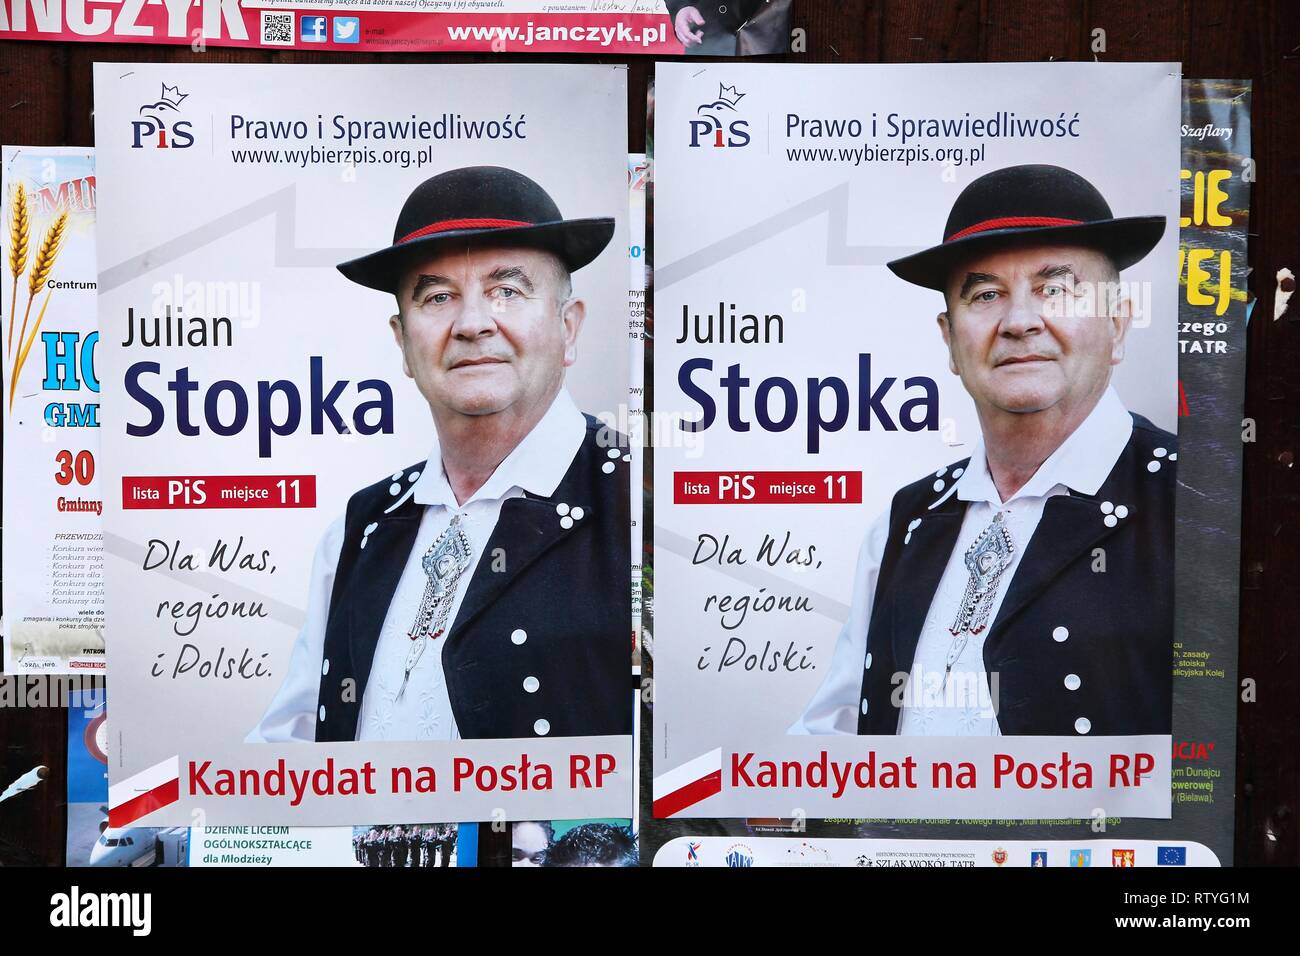 CHOCHOLOW, Pologne - 4 octobre 2015 : des affiches pour 2015 Candidats à l'élection parlementaire en Pologne. PiS, Droit et Justice est un choix de l'aile droite Banque D'Images